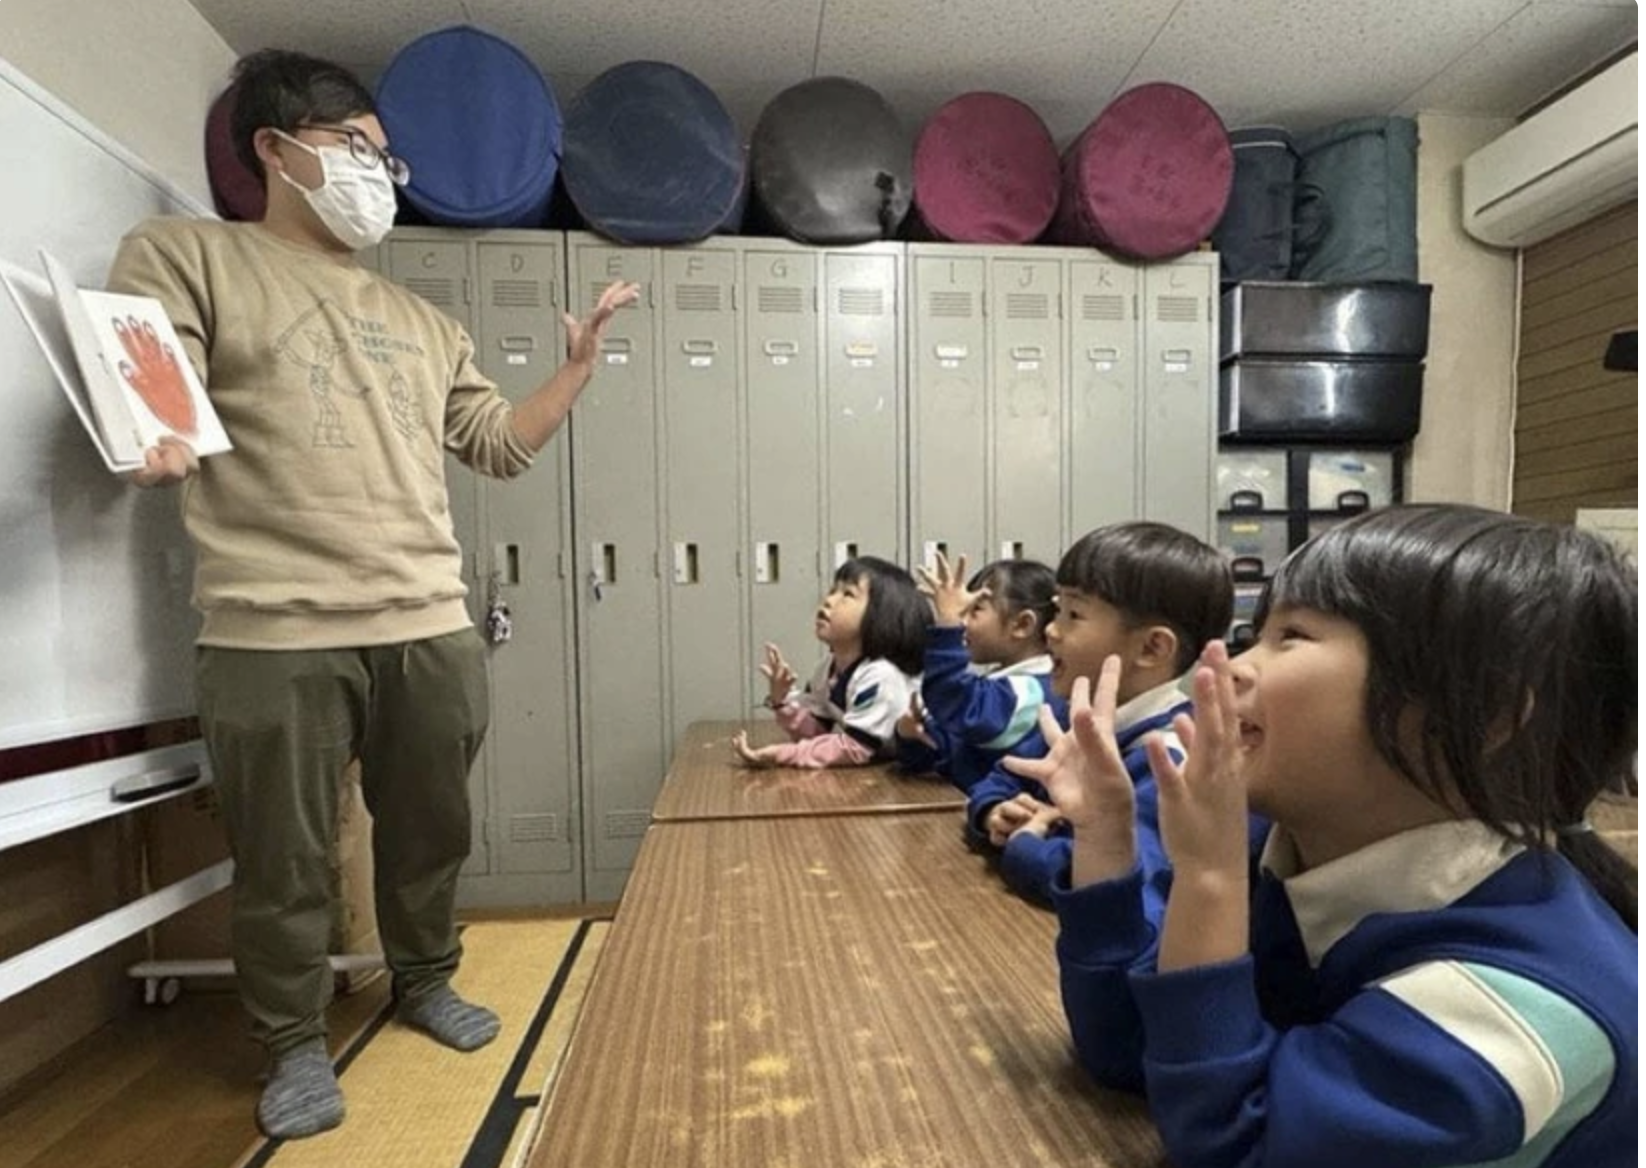 Trường mẫu giáo tại Nhật Bản nỗ lực hỗ trợ trẻ em Việt Nam hòa nhập